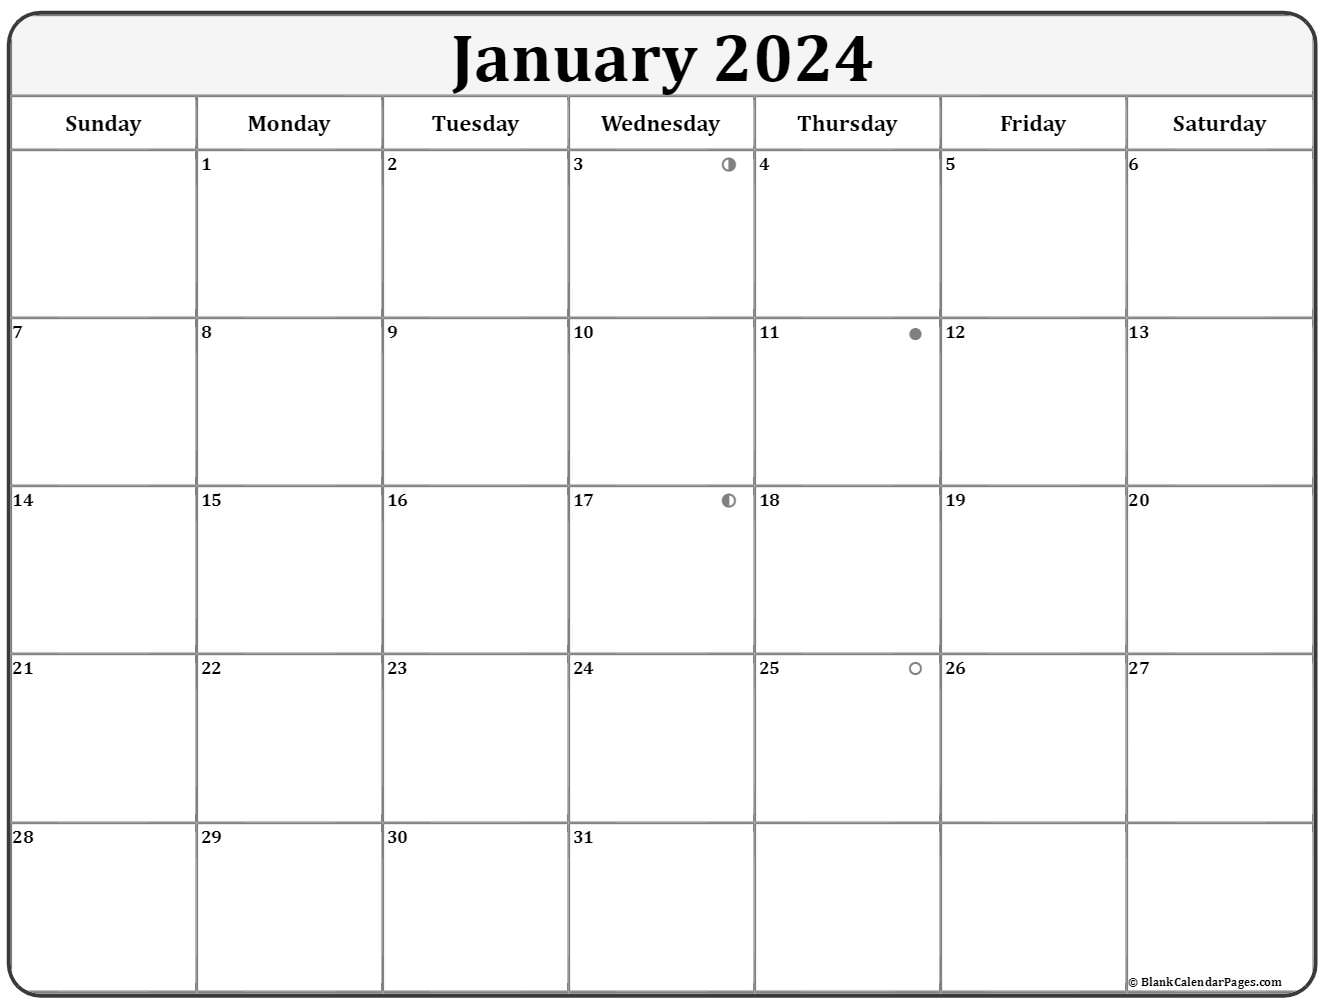 Moon Phase Calendar January 2022 January 2022 Lunar Calendar | Moon Phase Calendar